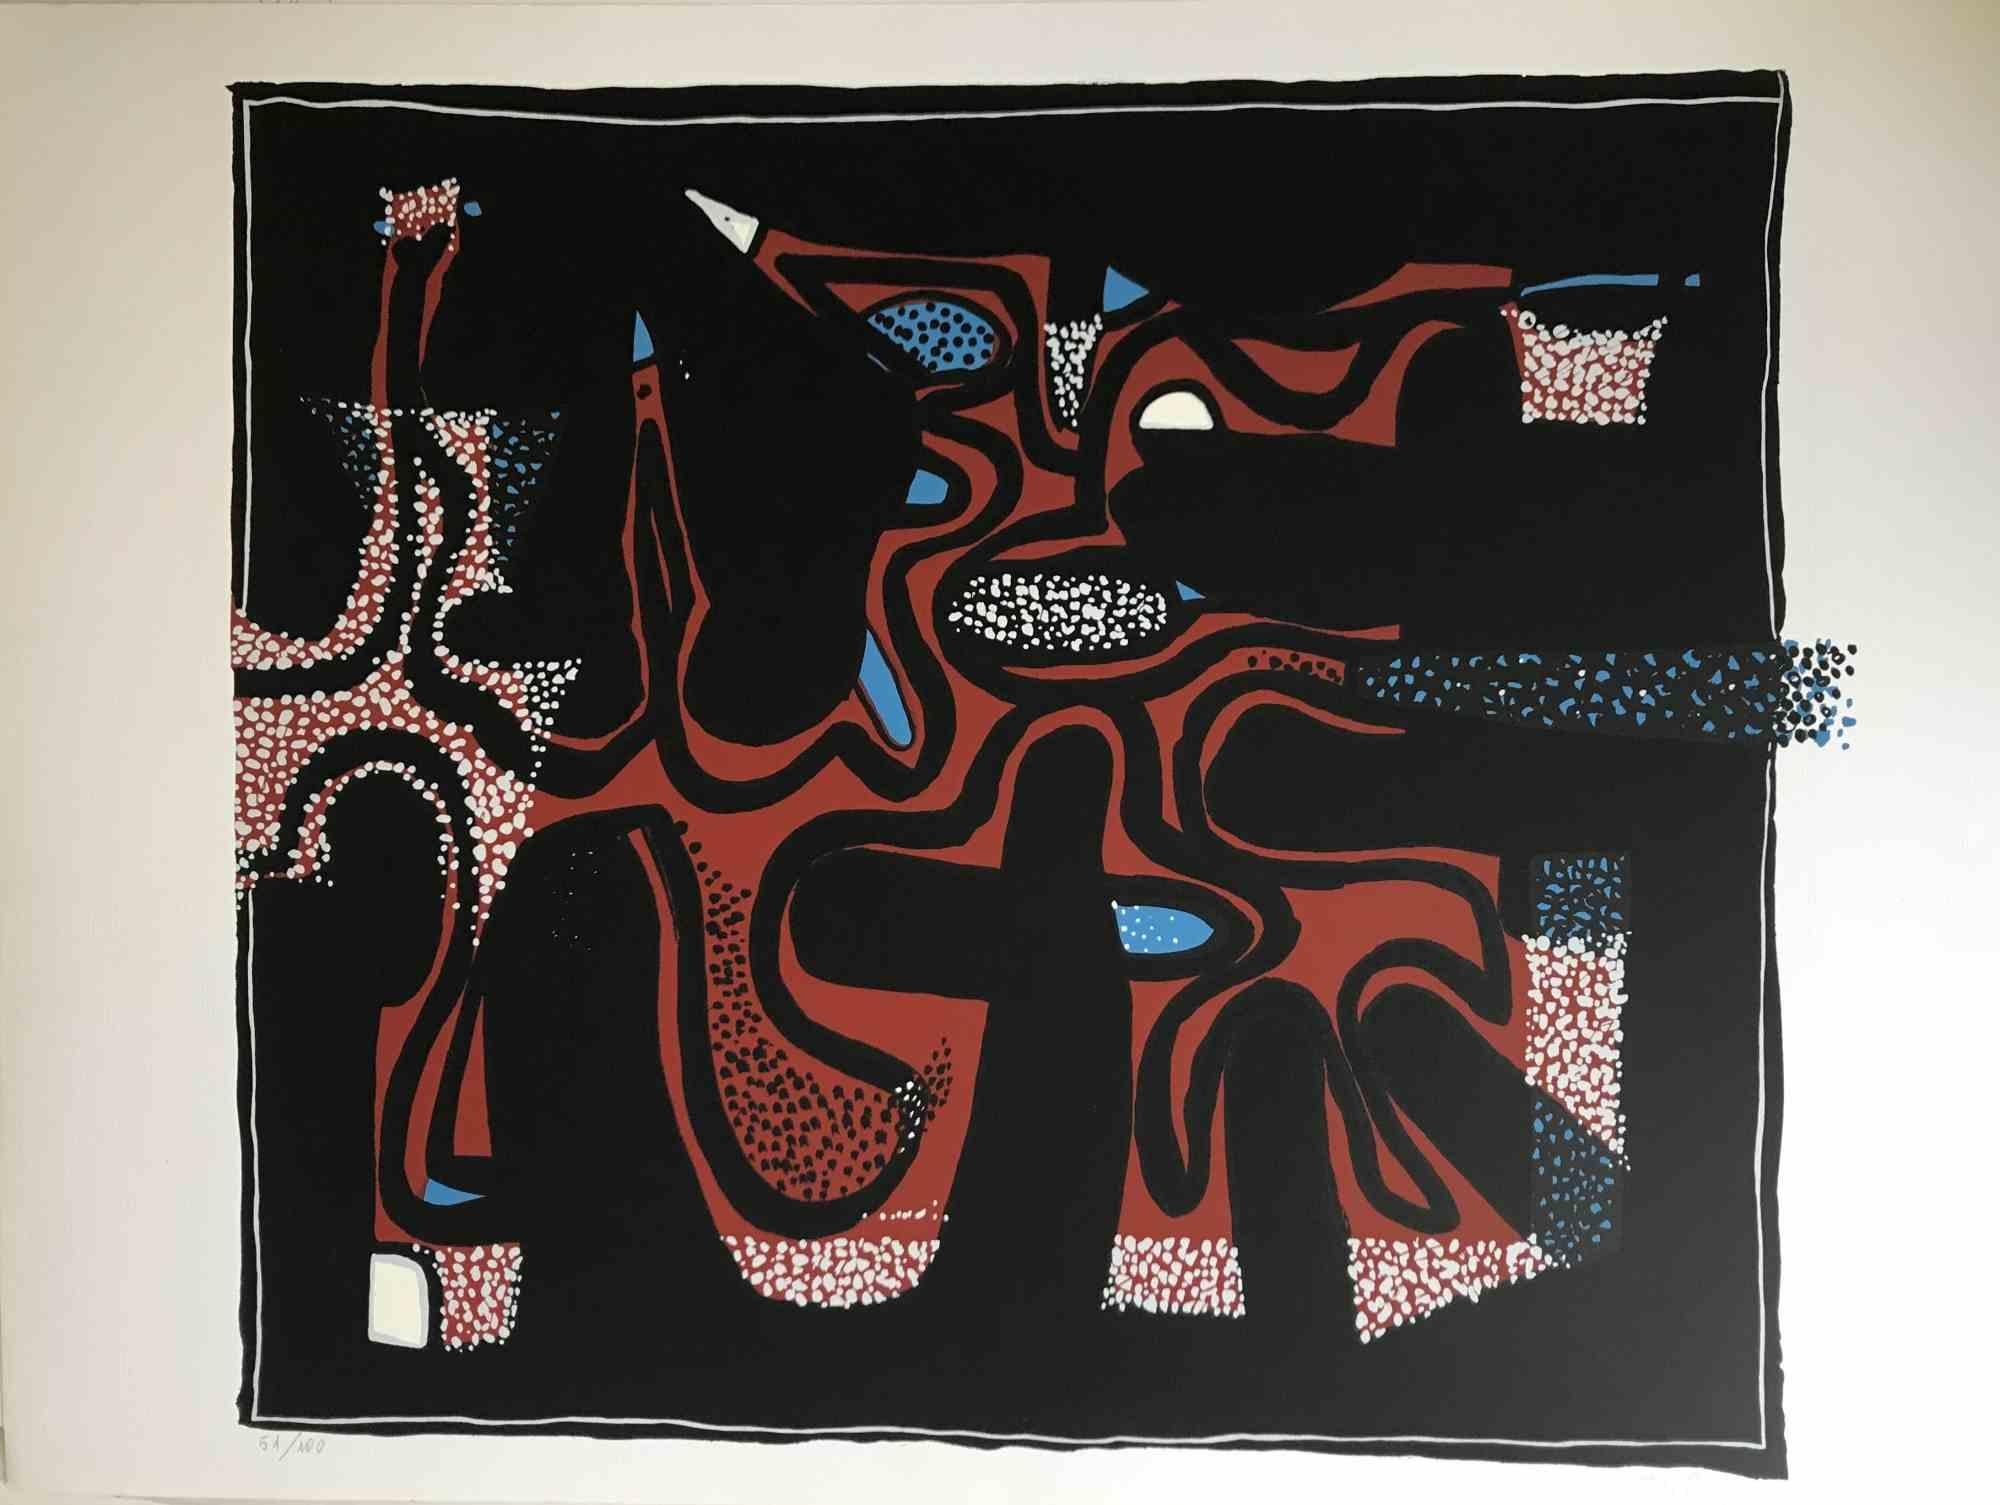 Composition abstraite est une sérigraphie colorée sur papier, réalisée dans les années 1970 par l'artiste italien.  Wladimiro Tulli.
Signé à la main en bas à droite. Numéroté au crayon dans la marge inférieure. Édition de 51/100 exemplaires.
Bonnes